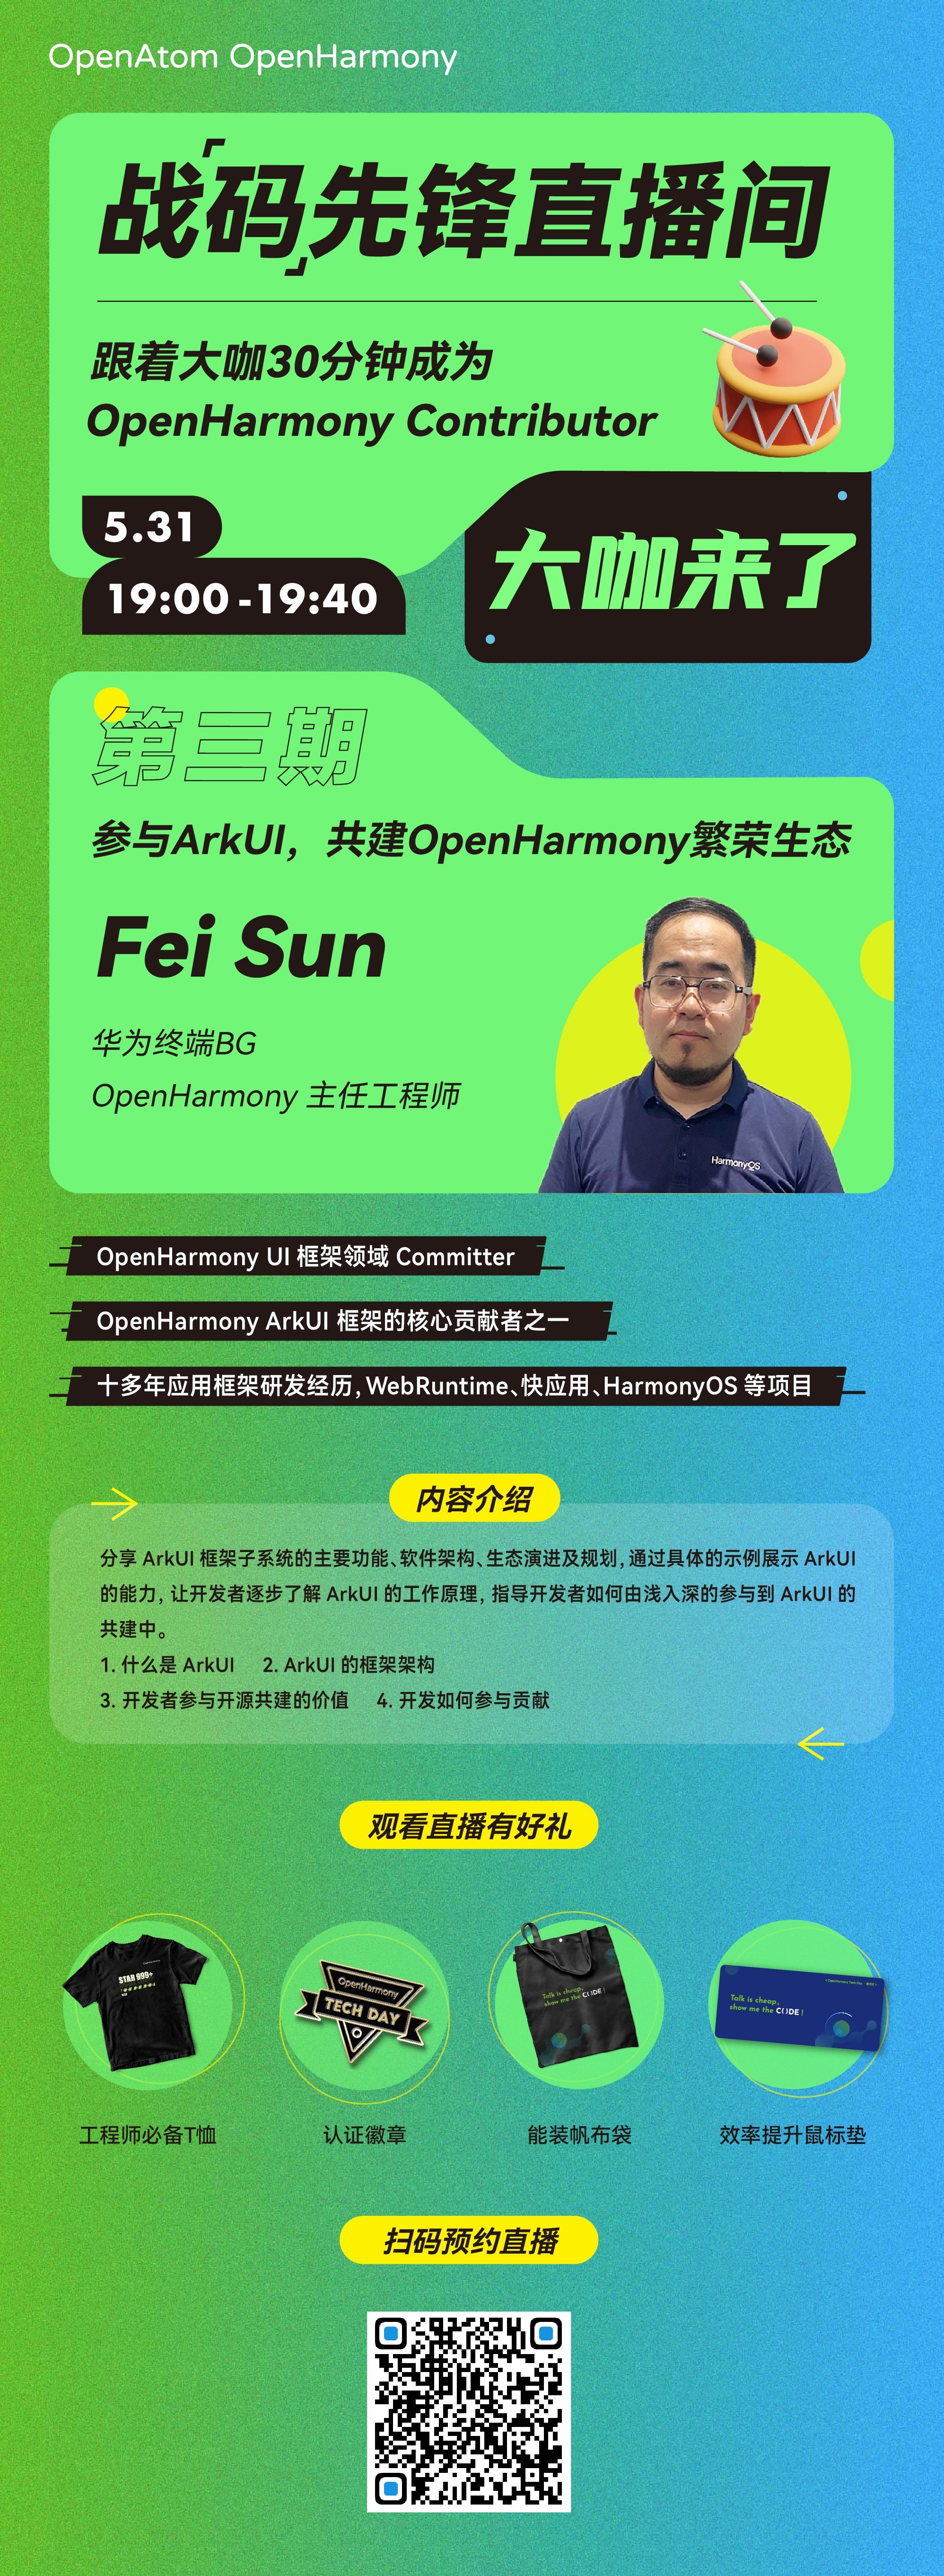 【直播回顾】参与ArkUI,共建OpenHarmony繁荣生态-开源基础软件社区